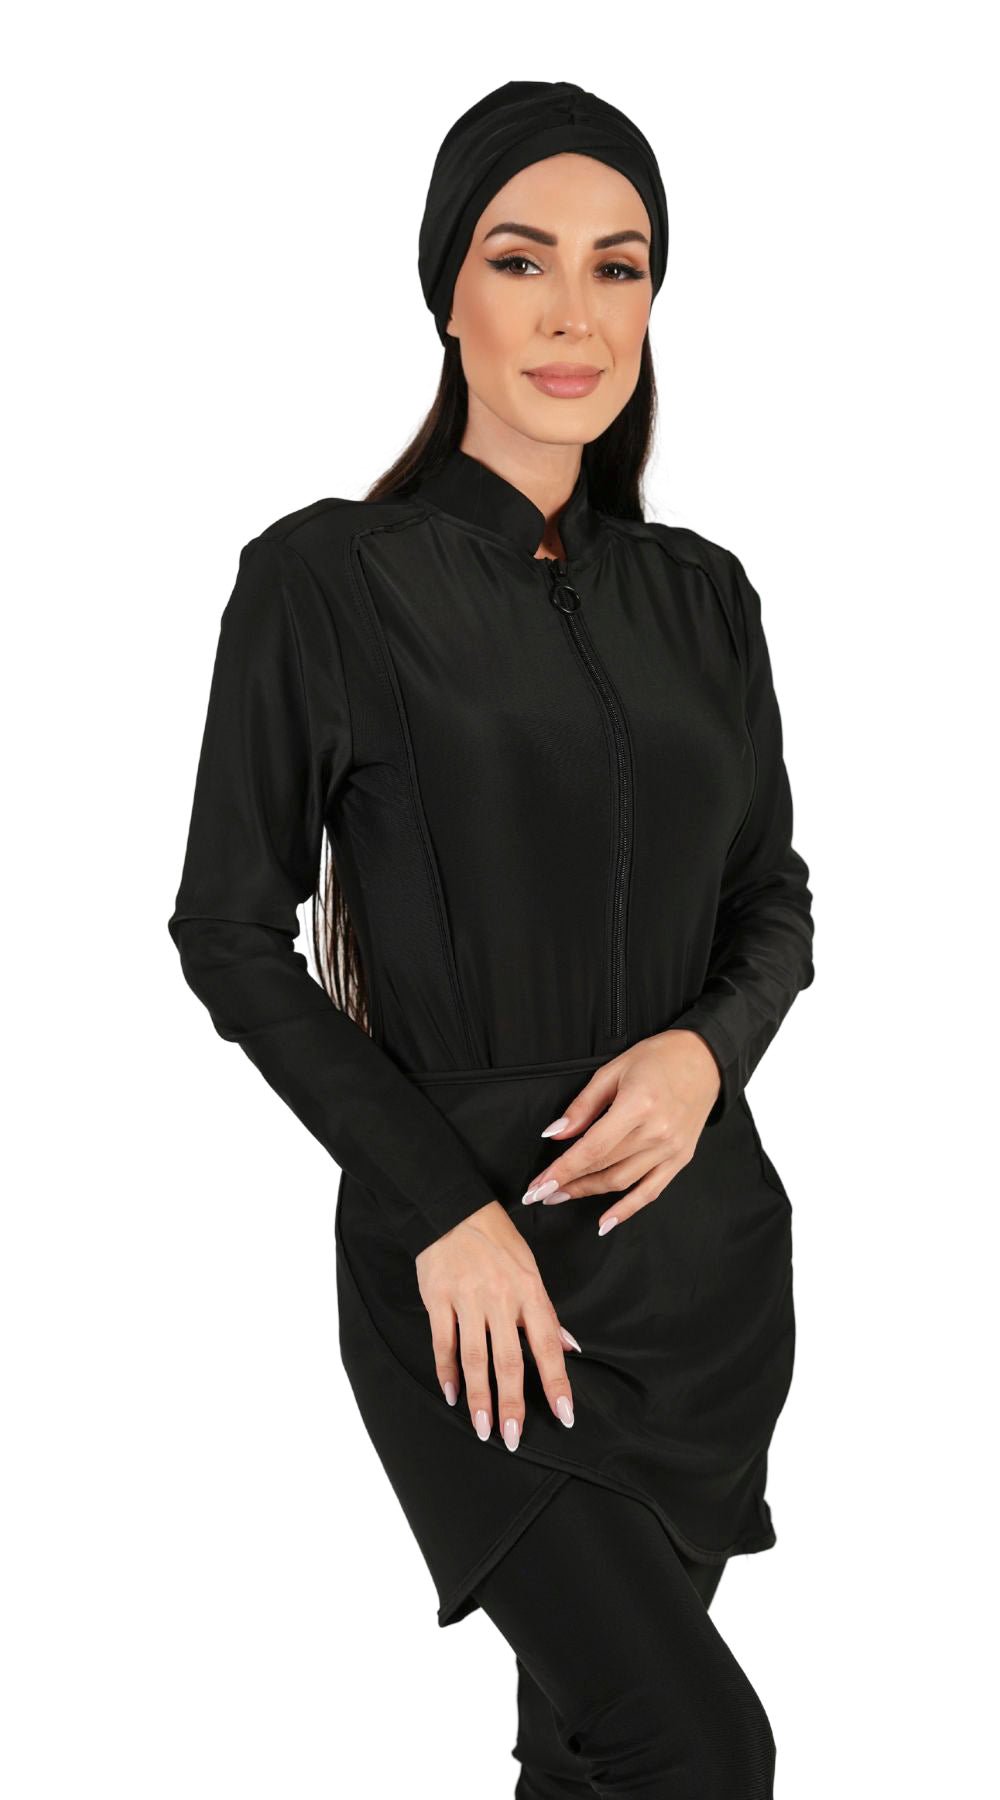 Essentials 4-Piece Full Coverage Plain Burkini Set (Black) - Bare Essentials
Modest Islamic Swimsuit